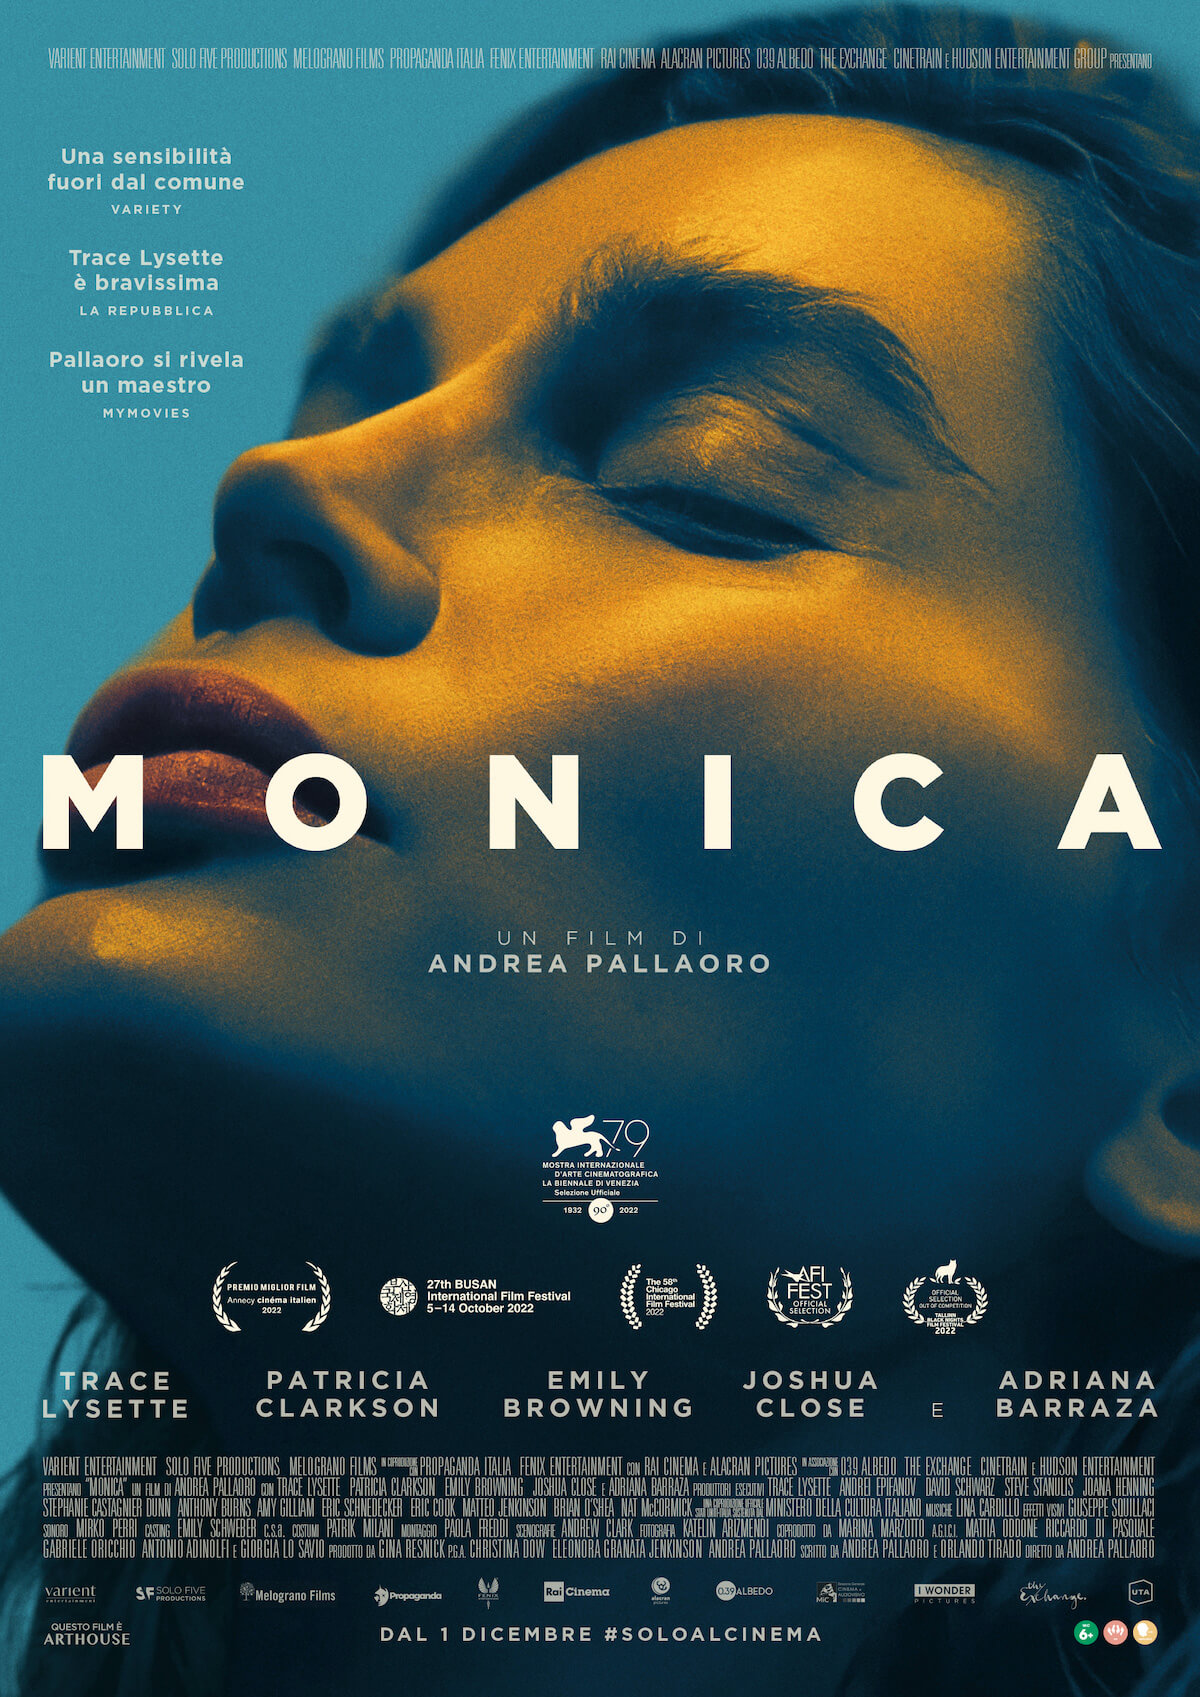 Perché Monica è un piccolo grande trionfo per le storie transgender - MONICA manifesto ufficiale - Gay.it